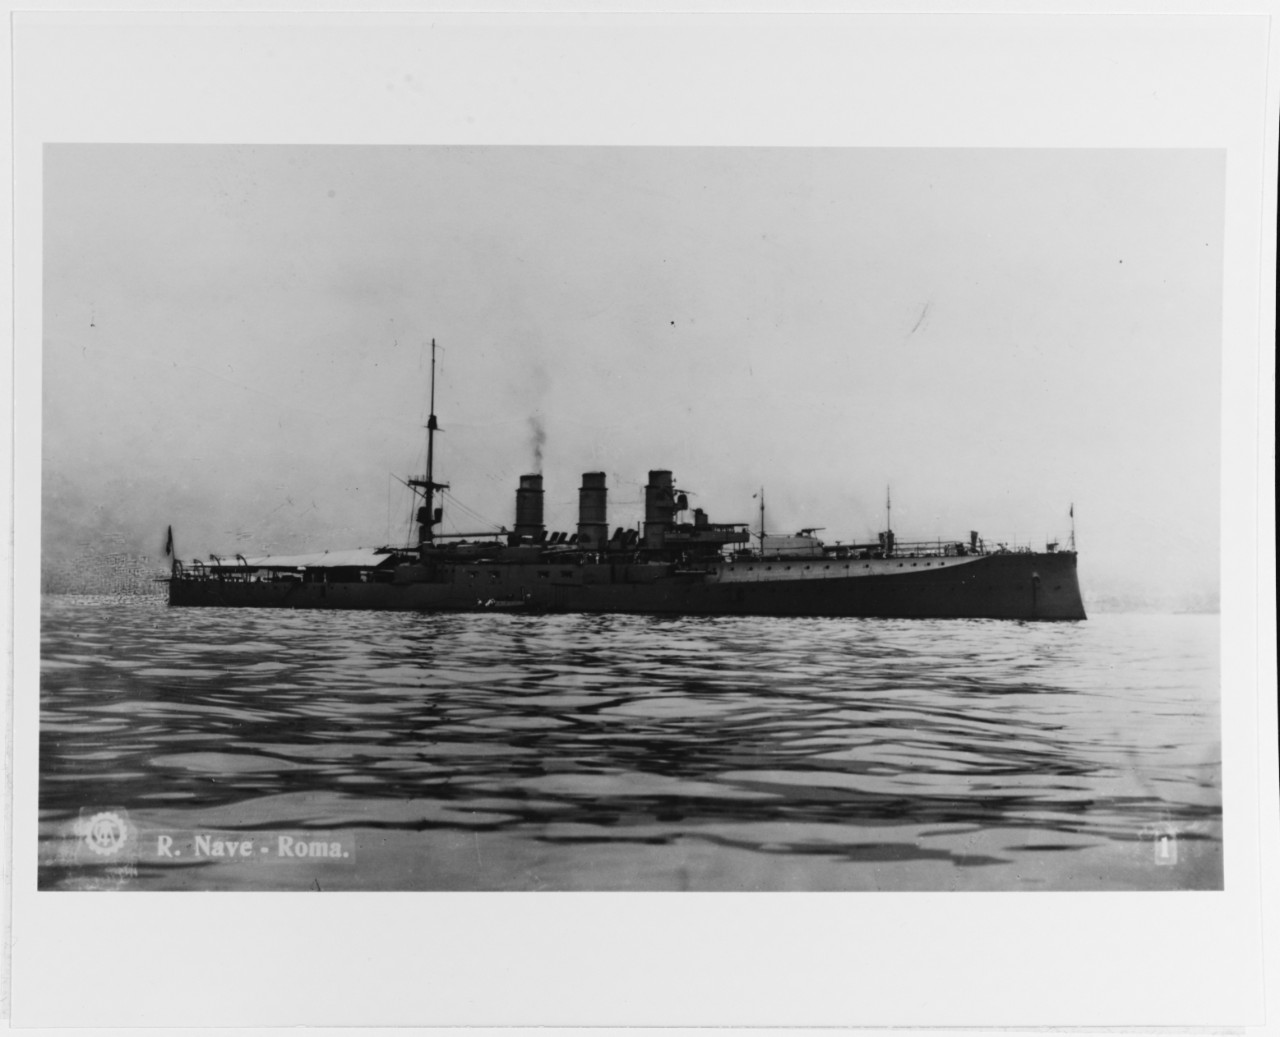 ROMA (Italian battleship, 1907-1932)